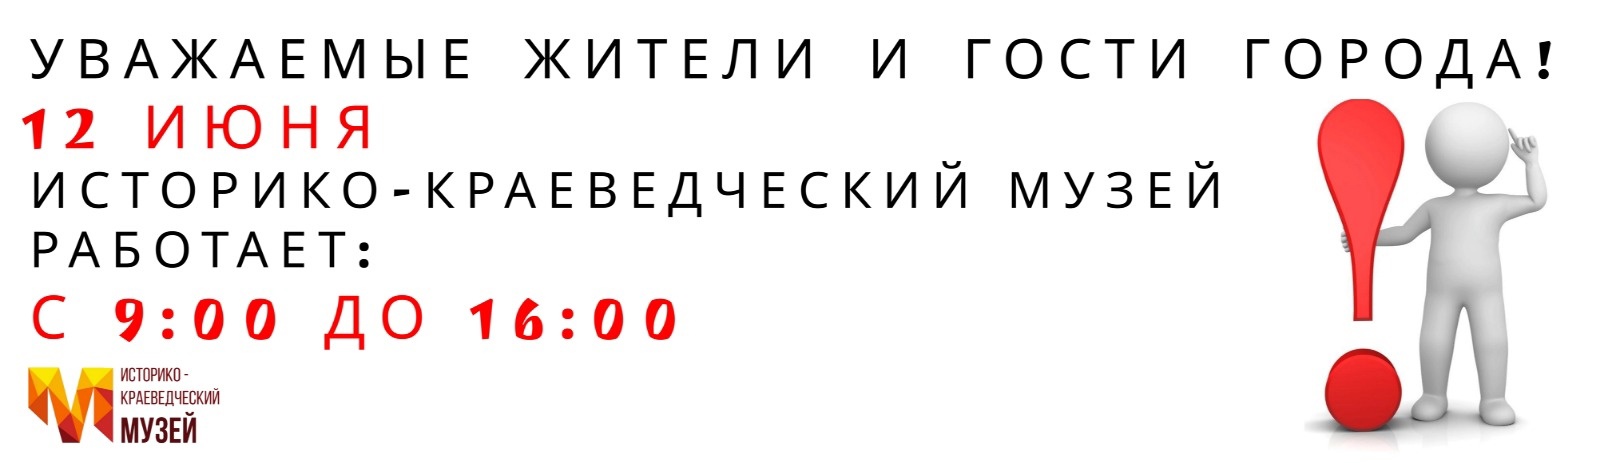 12 июня Историко-краеведческий музей работает с 9:00 до 16:00